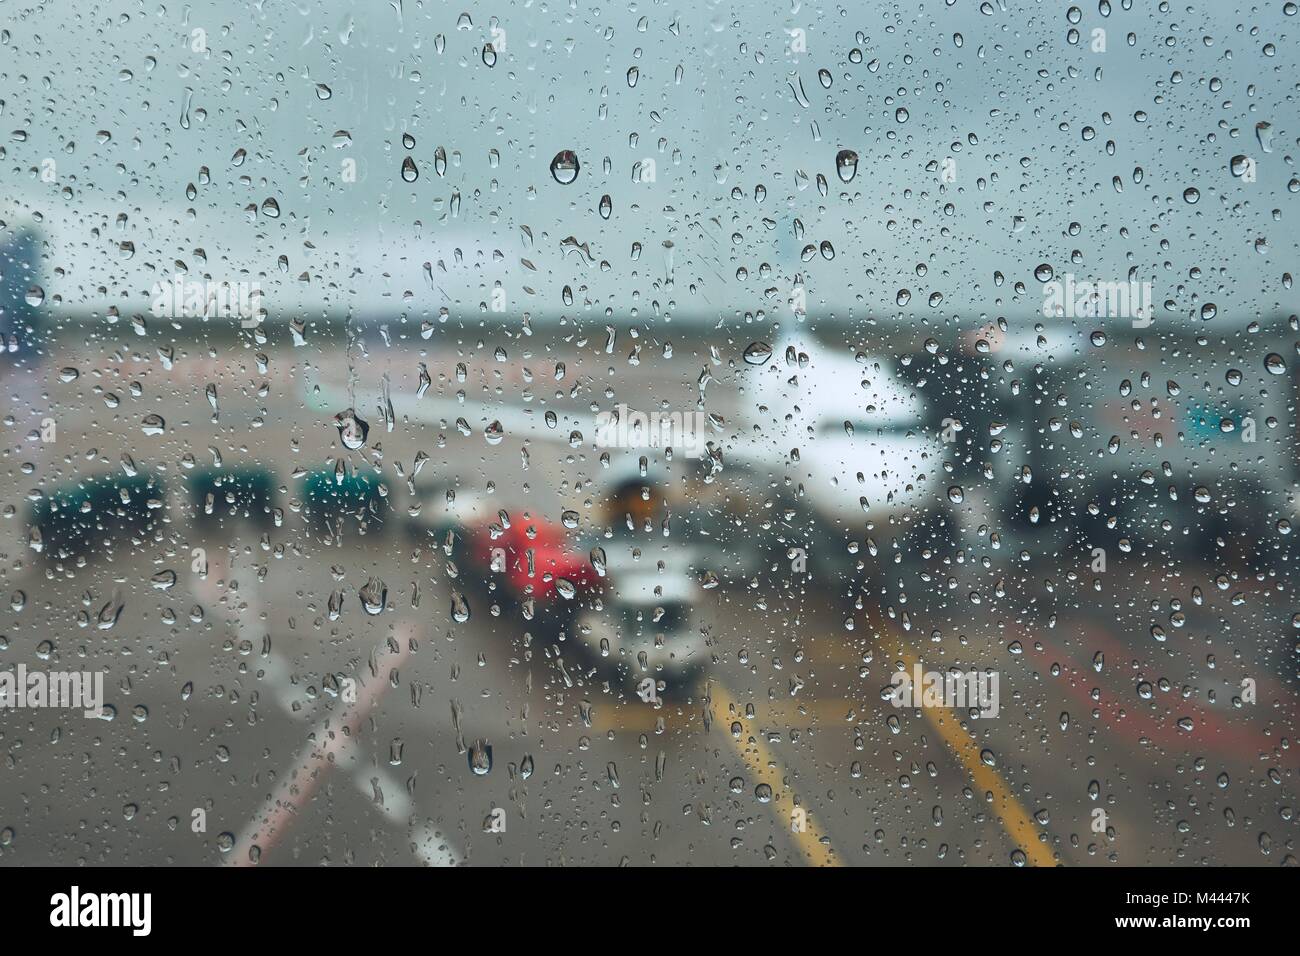 Sturm am Flughafen. Blick auf das Flugzeug durch Regen fällt. Themen Wetter und Verzögerung oder Flug abgesagt. Stockfoto